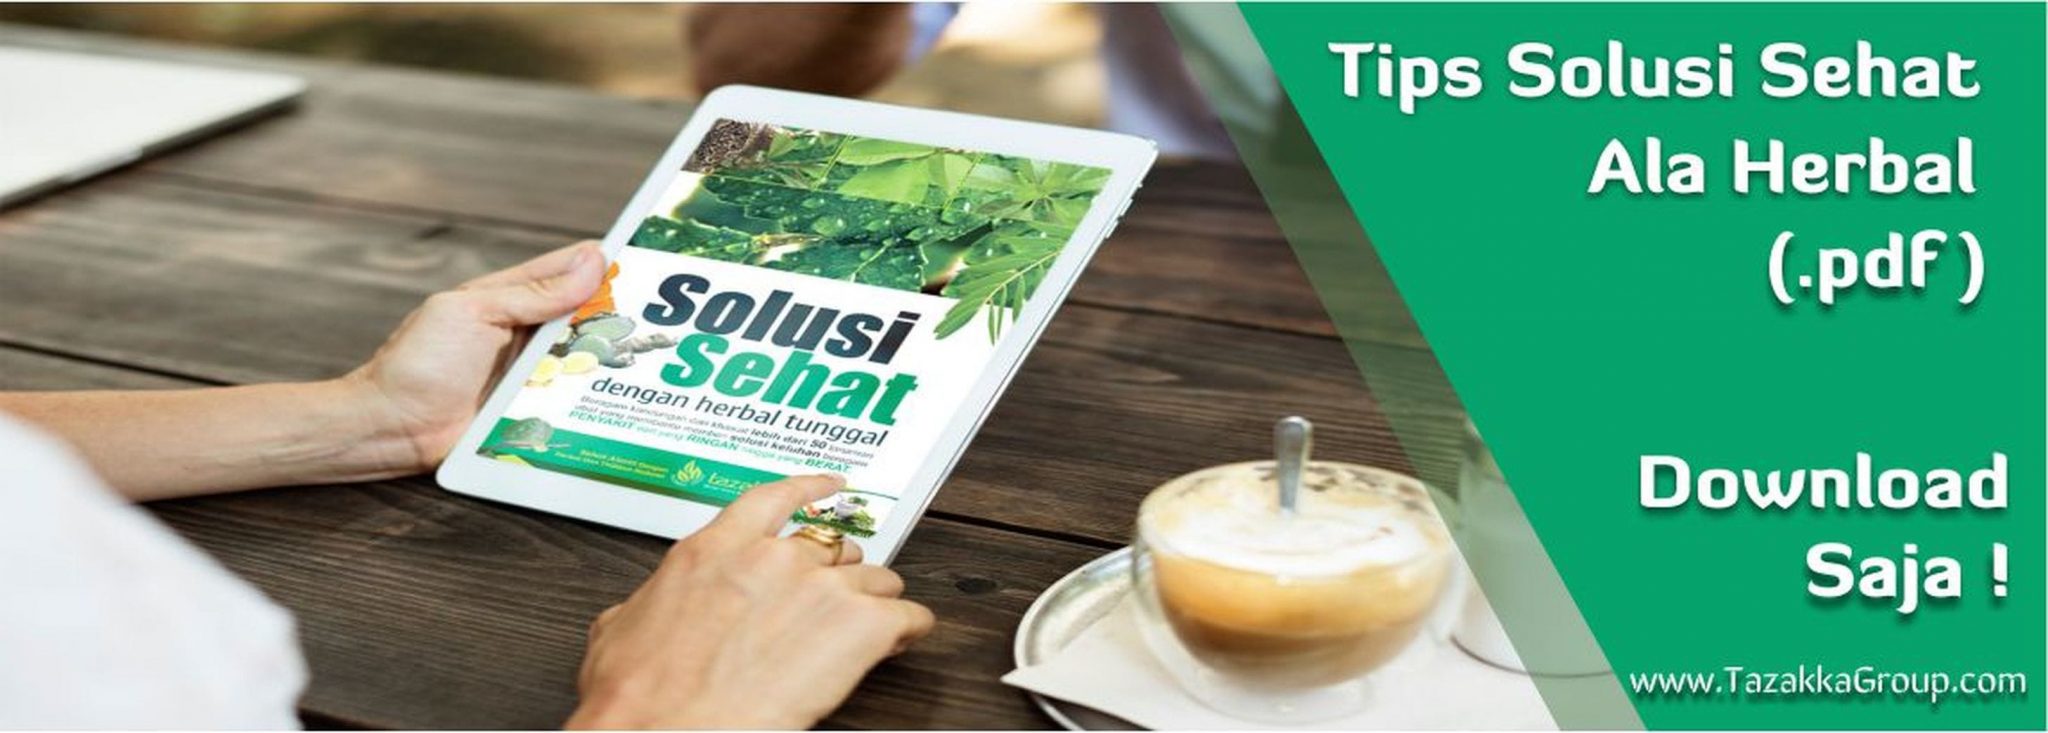 Download buku katalog ebook .pdf tips solusi sehat manfaat tanaman herbal katalog produk tazakka